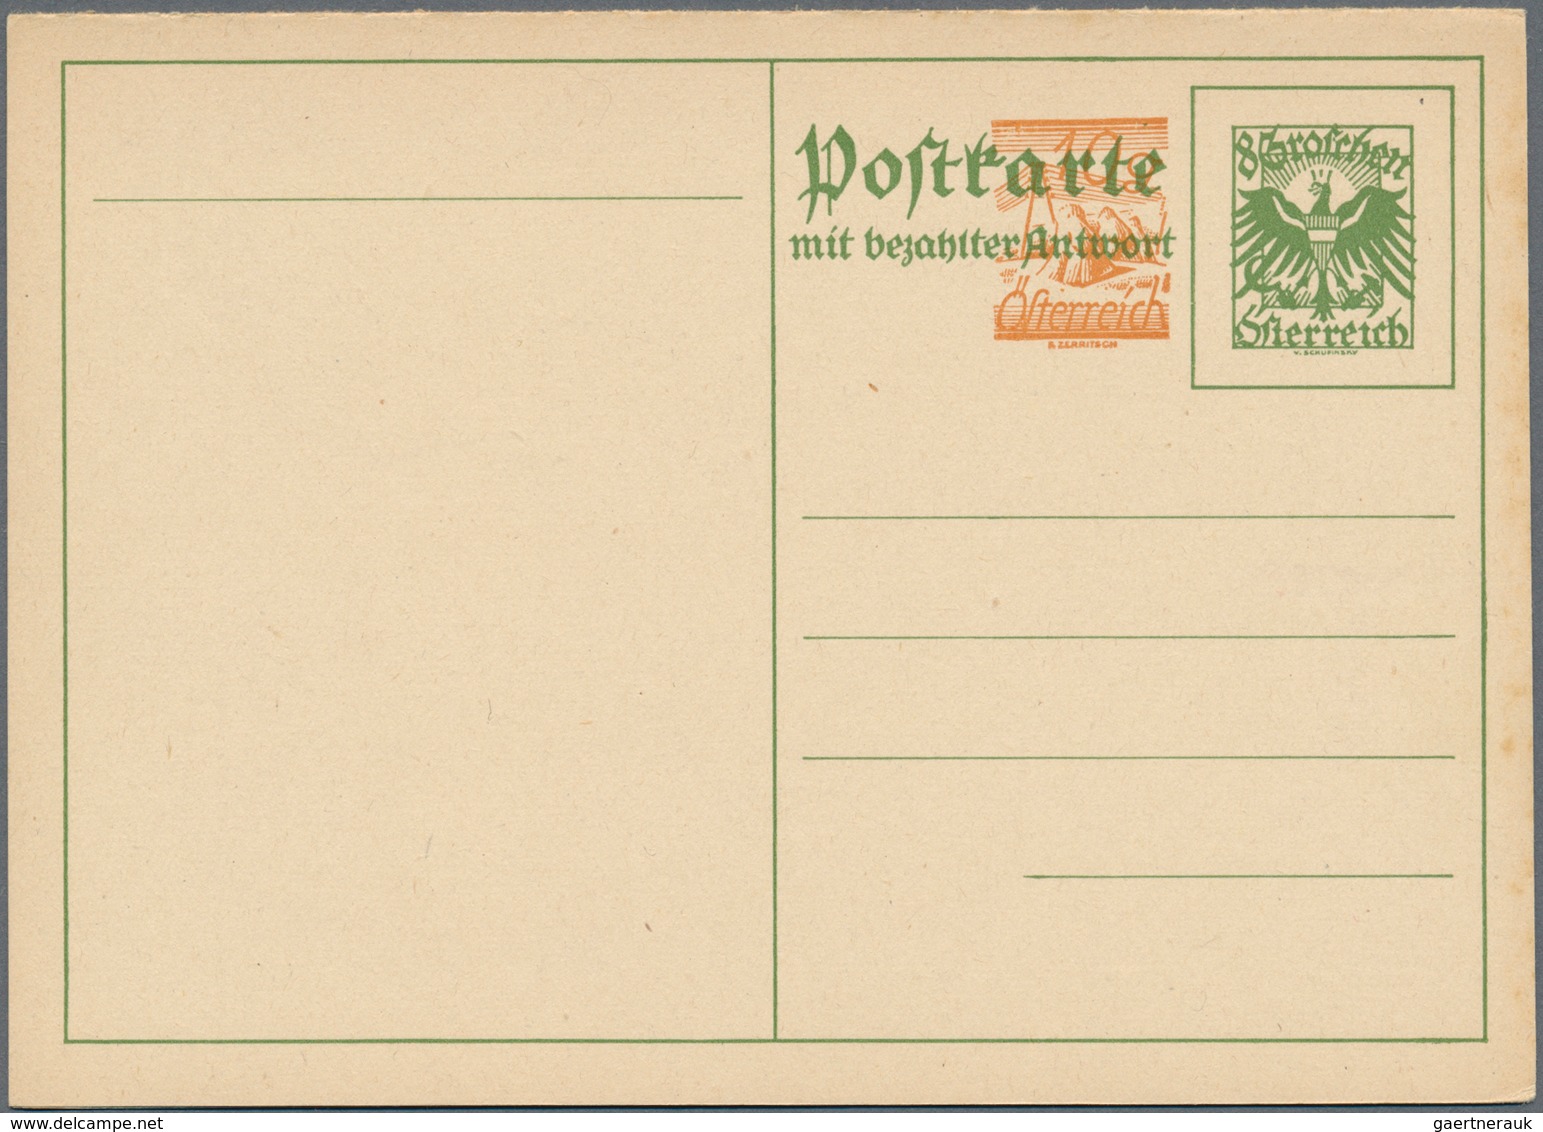 Österreich - Privatganzsachen: 1918/1928, sehr gehaltvolle Sammlung mit 82 amtlichen ungebrauchten G